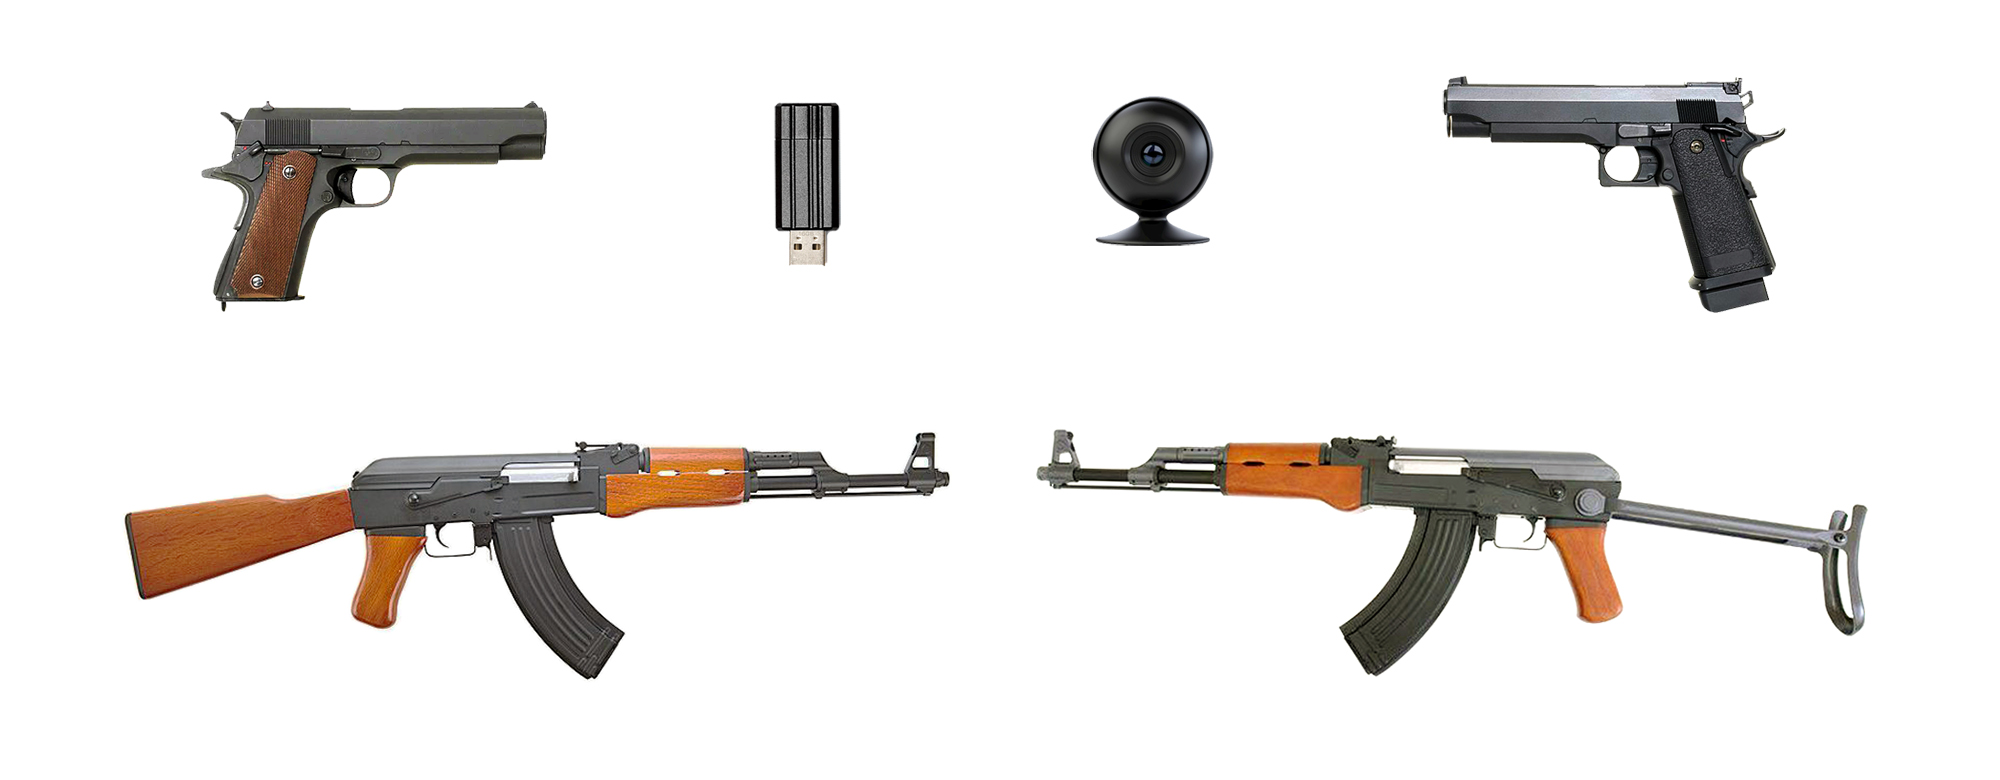 Состав комплекта Интерактивный лазерный тир. Бизнес-4: игровое оружие (2 пистолета, 2 автомата), камера, флешка с программным обеспечением